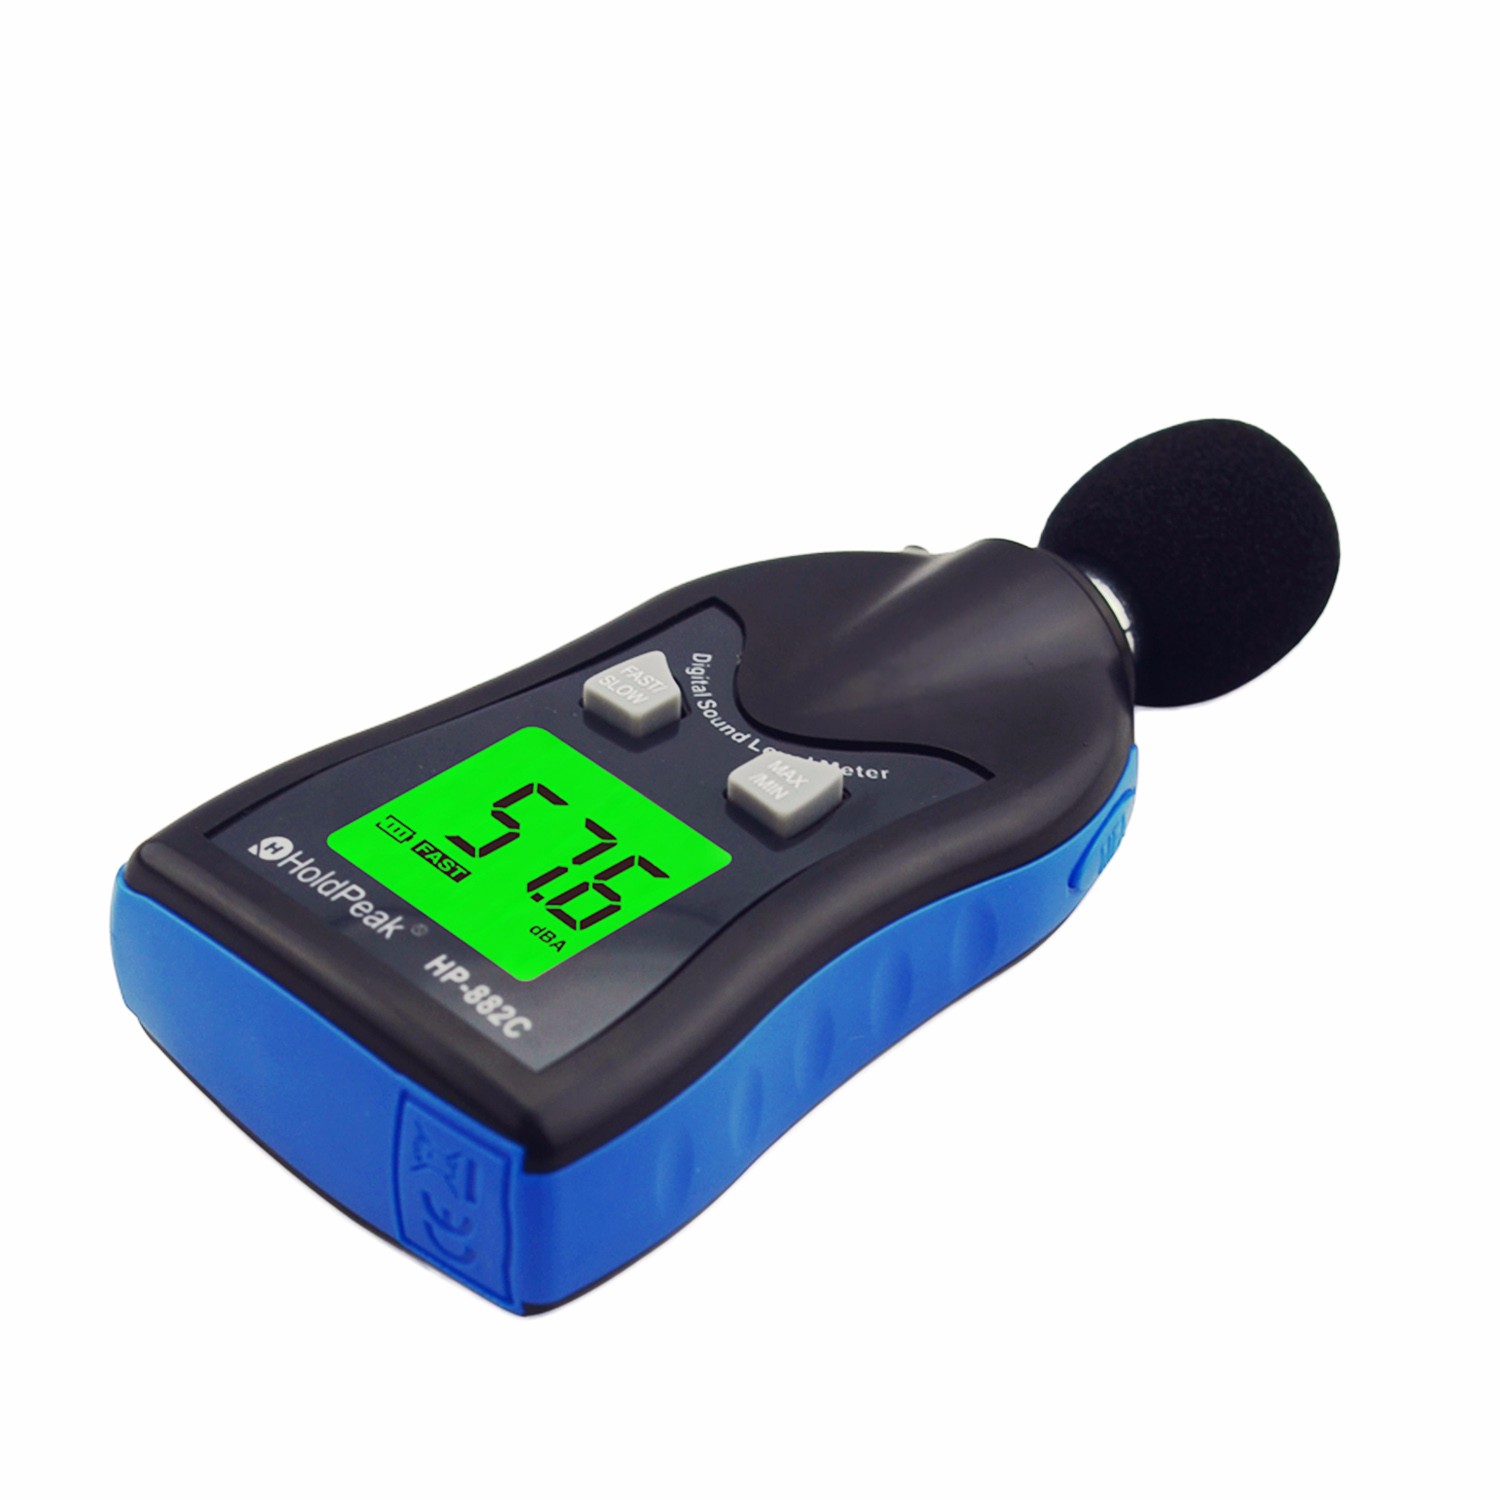 Digital Sound Level Meter, Architectural Acoustics Measurement HP-882C